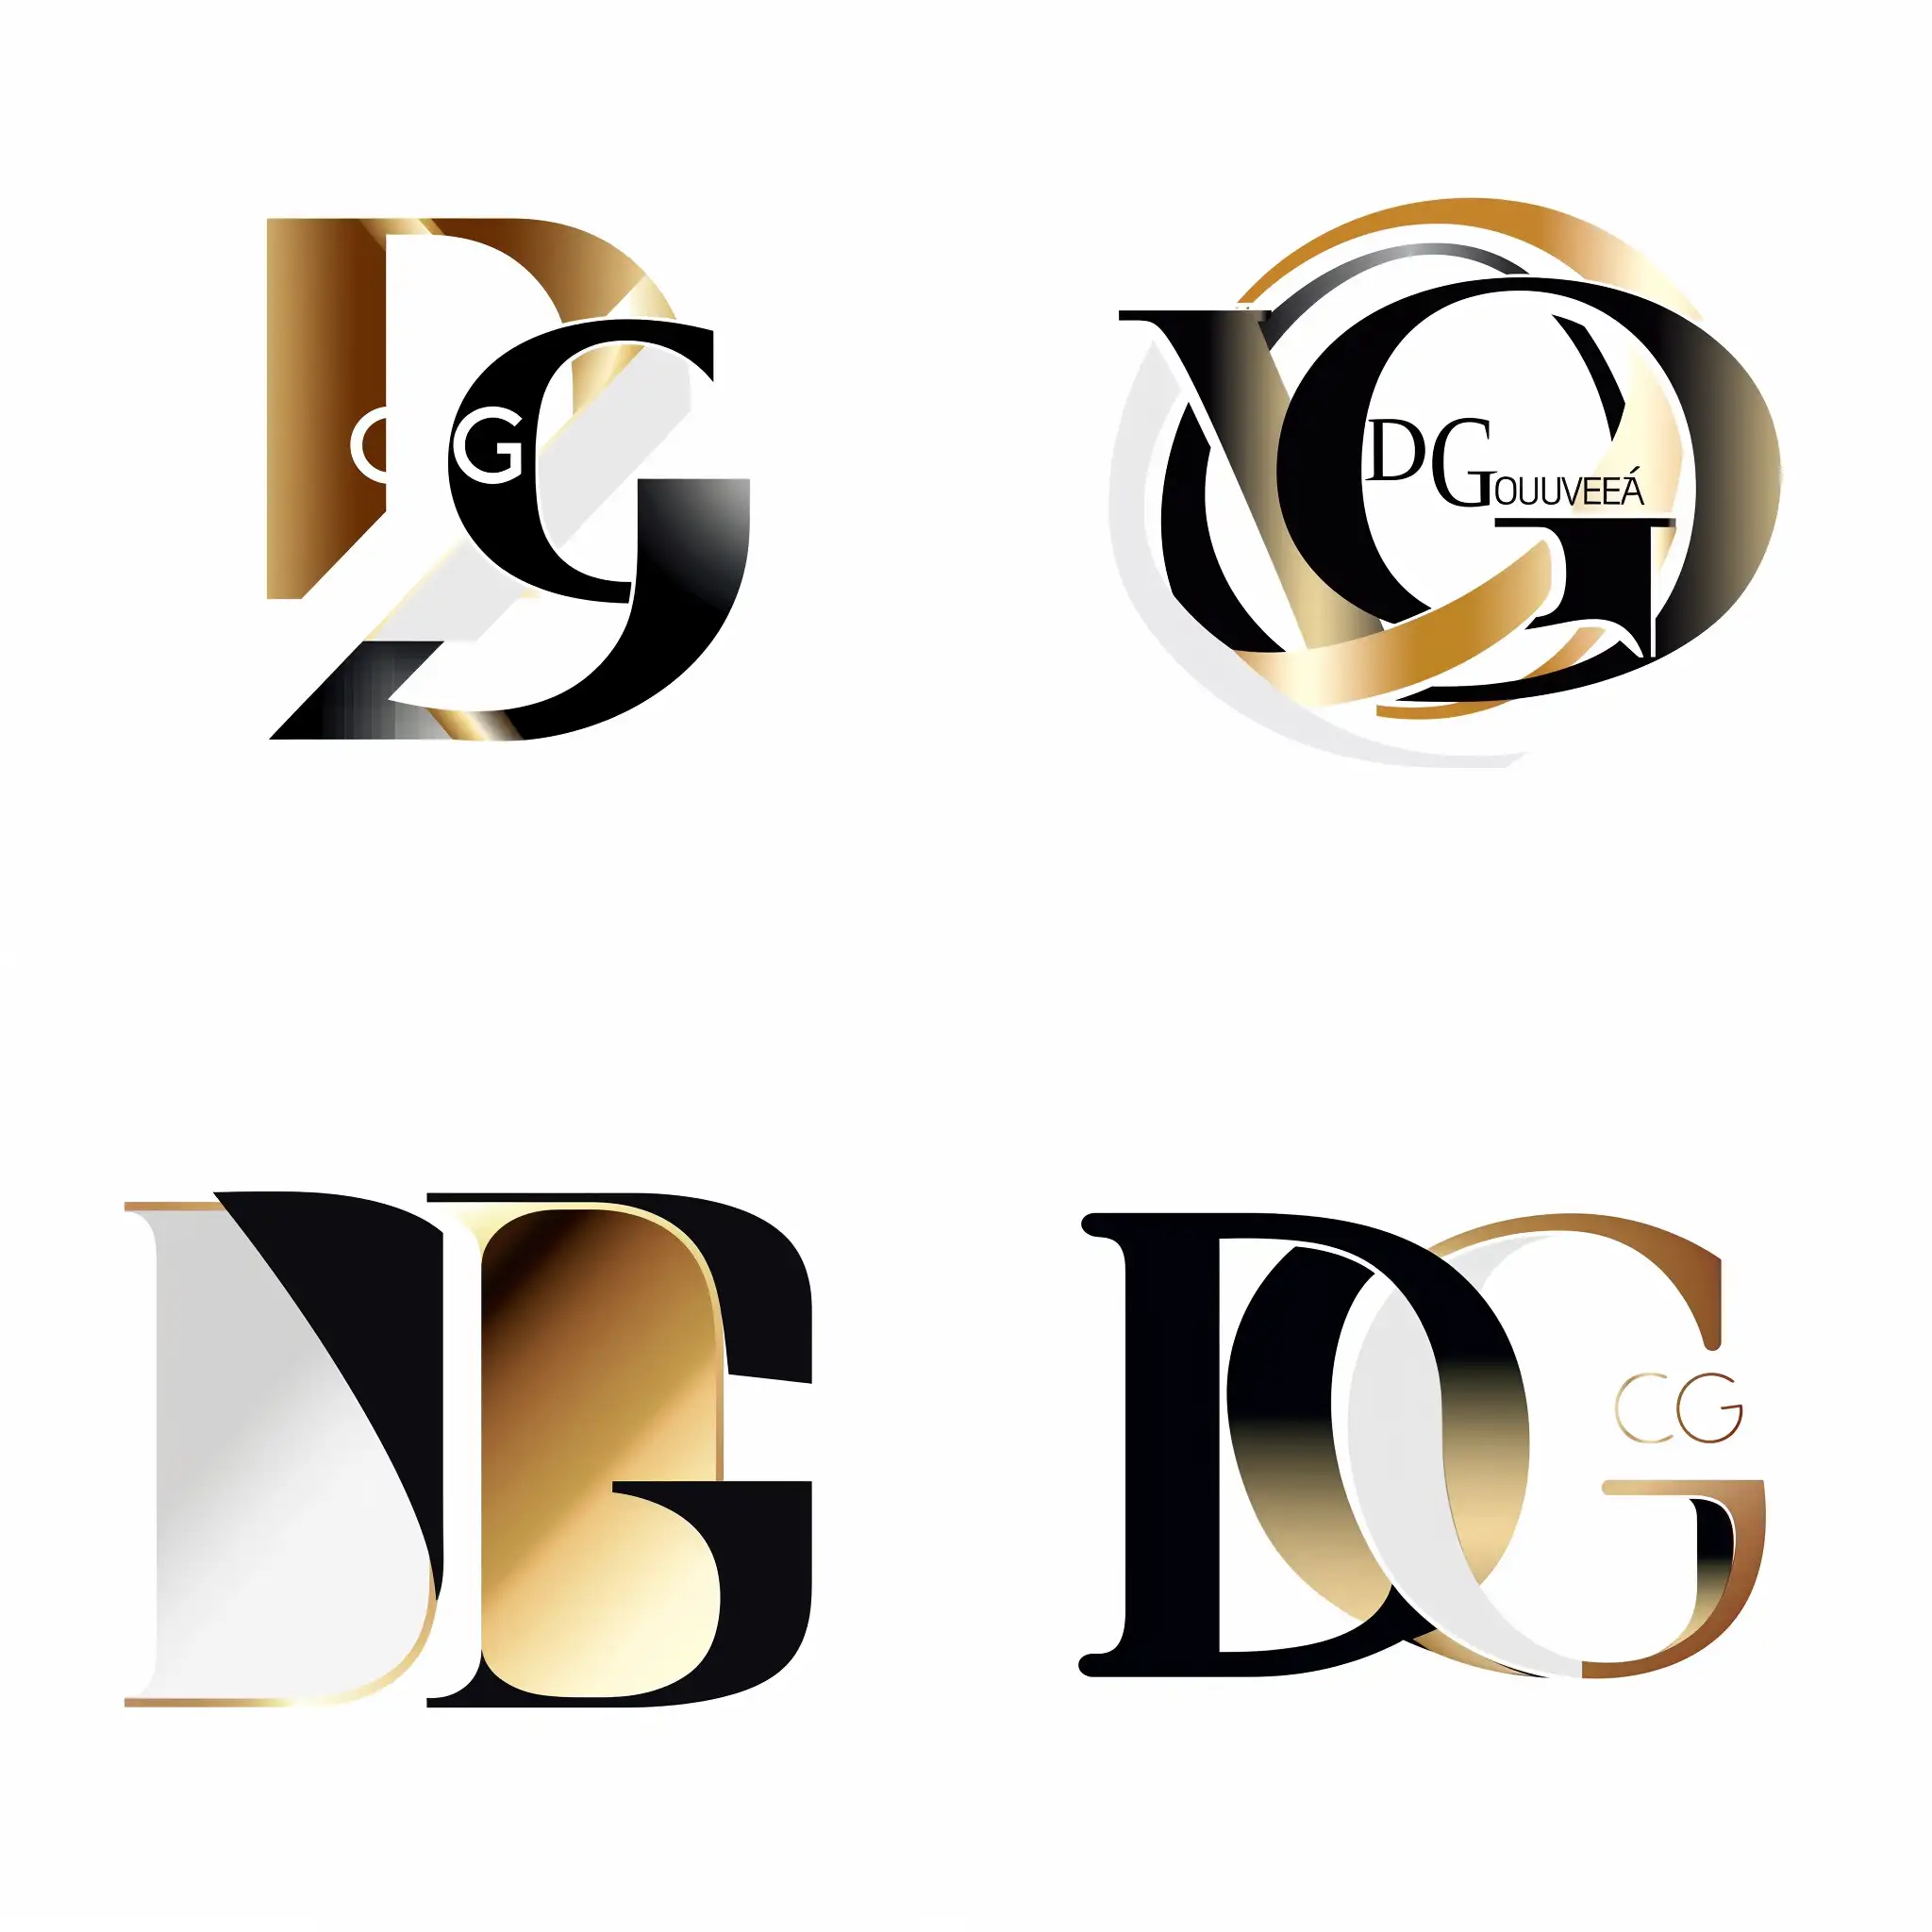 cria om logo com as letras DG usando as cores branco, preto e dourado. Inclui também o nome Duarte Gouveia e Luxury Real Estate Agent
